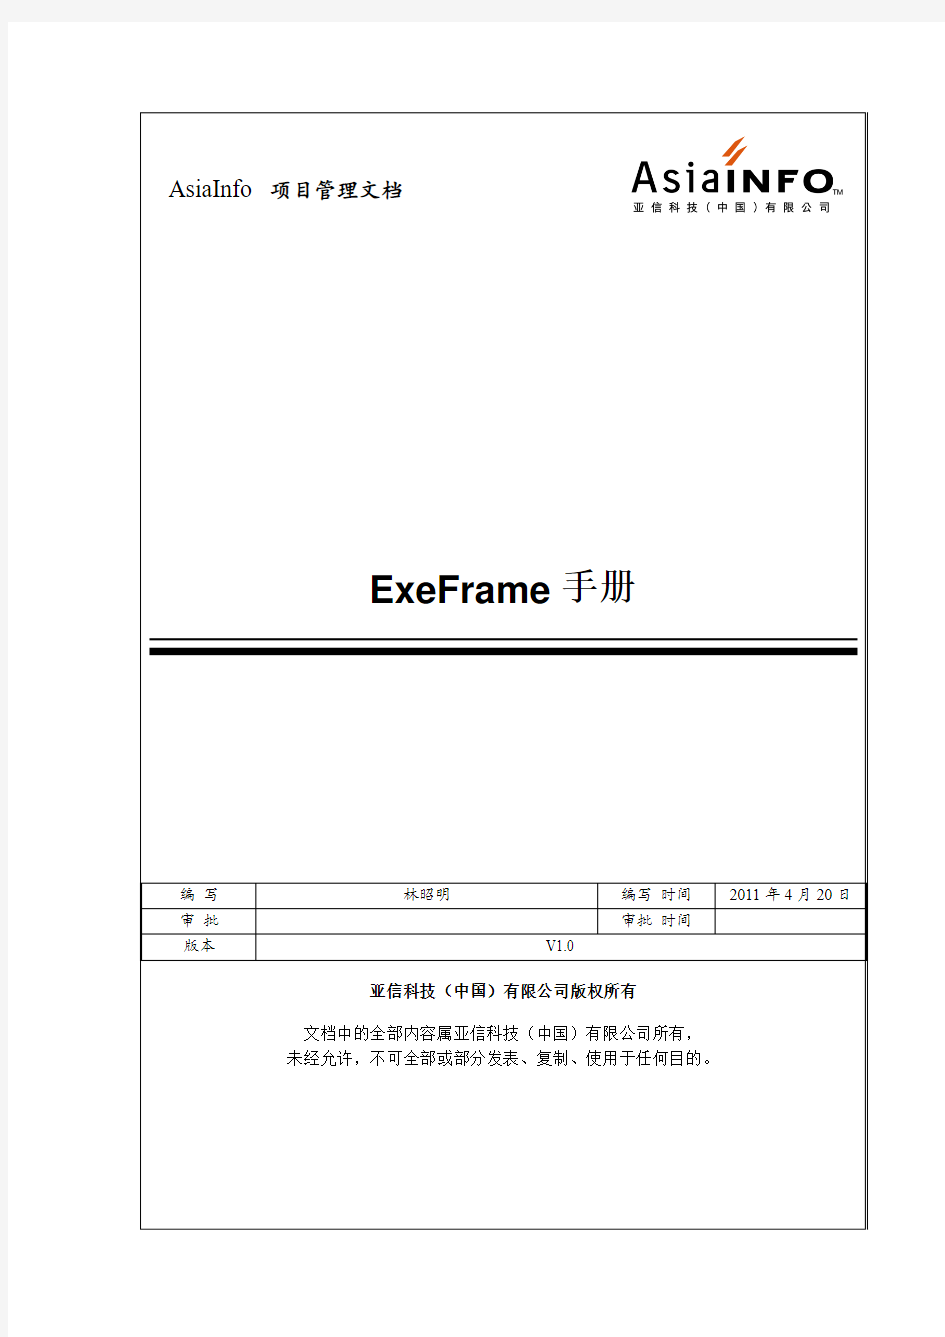 ExeFrame手册_V1.3